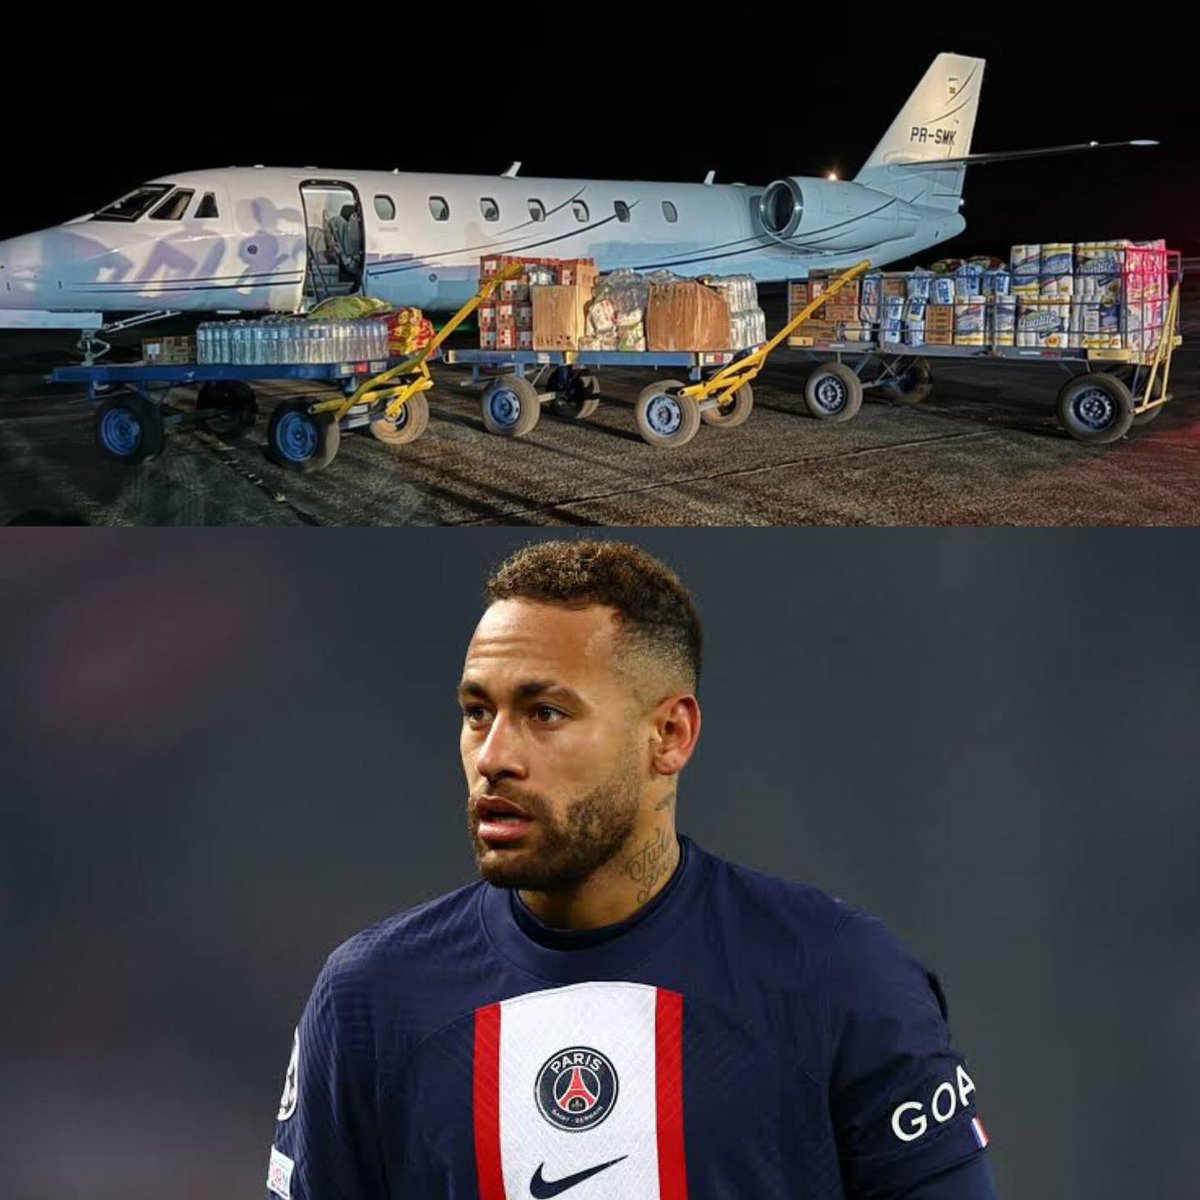 #actual ⚽️ La estrella del fútbol brasileño #Neymar, utilizó su jet para llevar ayuda a las personas afectadas por las inundaciones en #Brasil 🇧🇷